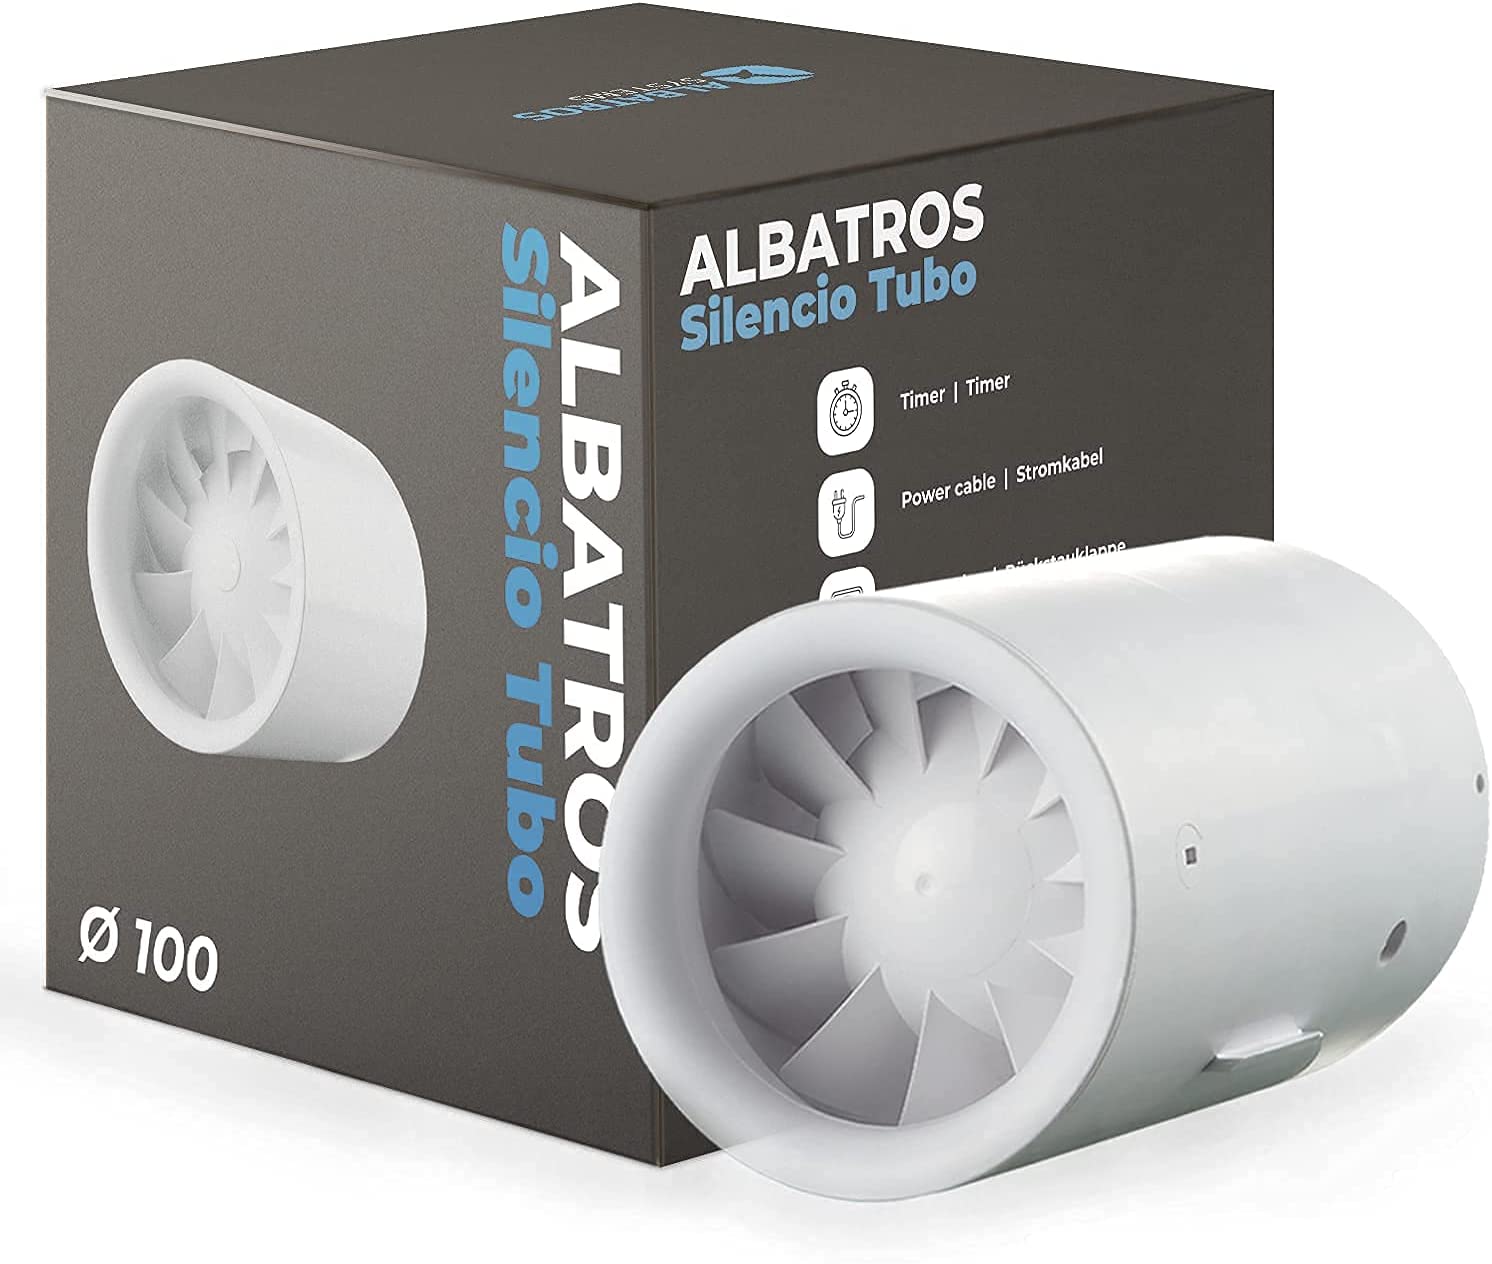 Ventilateur Albatros 100 Silencio Tubo